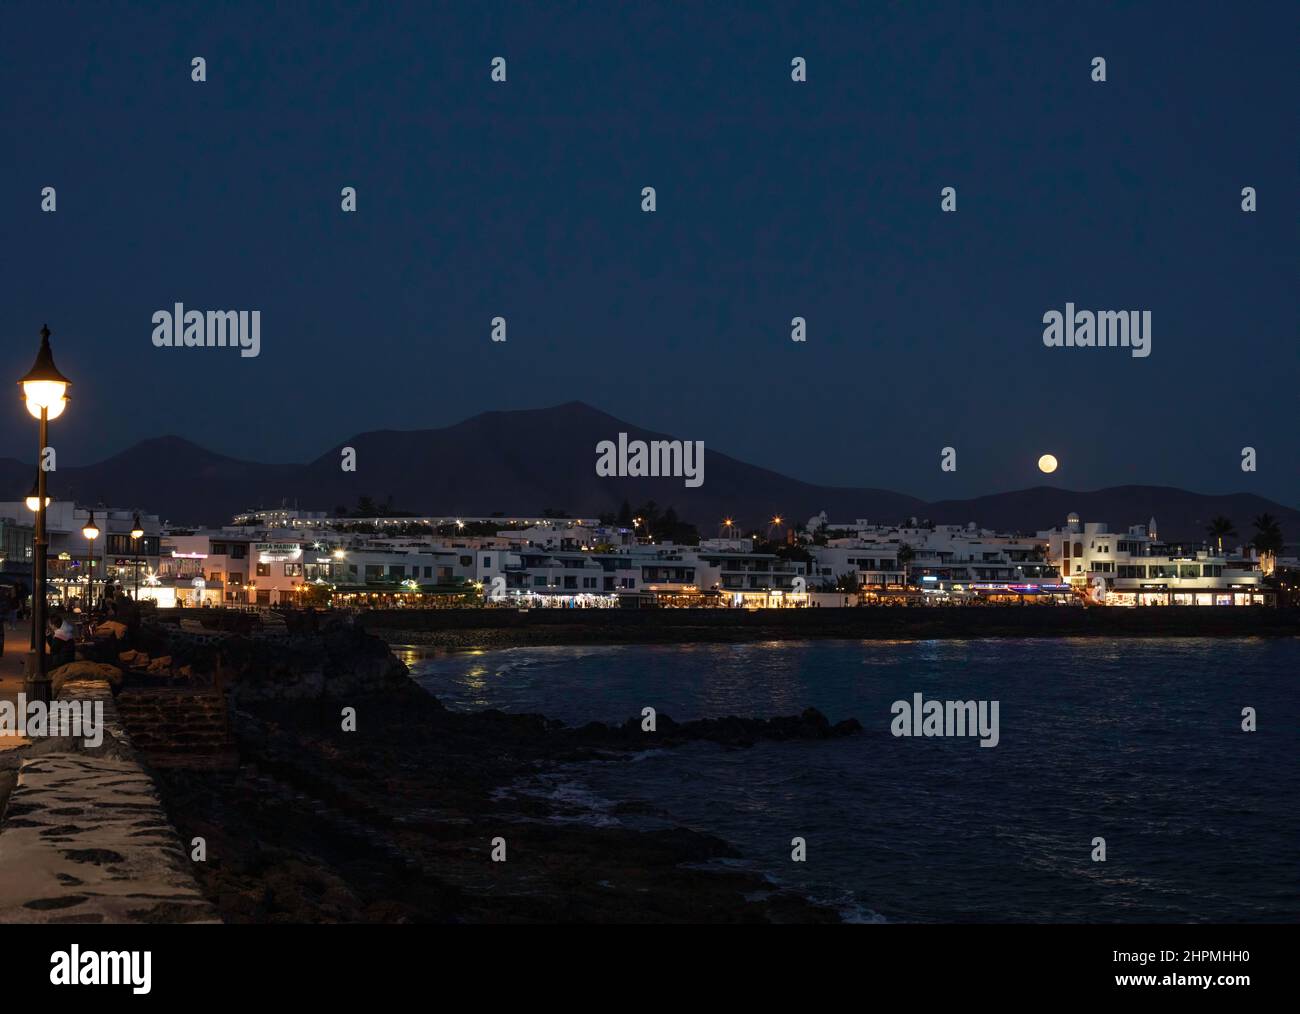 La lune s'élève au-dessus du front de mer de Playa Blanca, Lanzarote, îles Canaries. Espagne. Banque D'Images